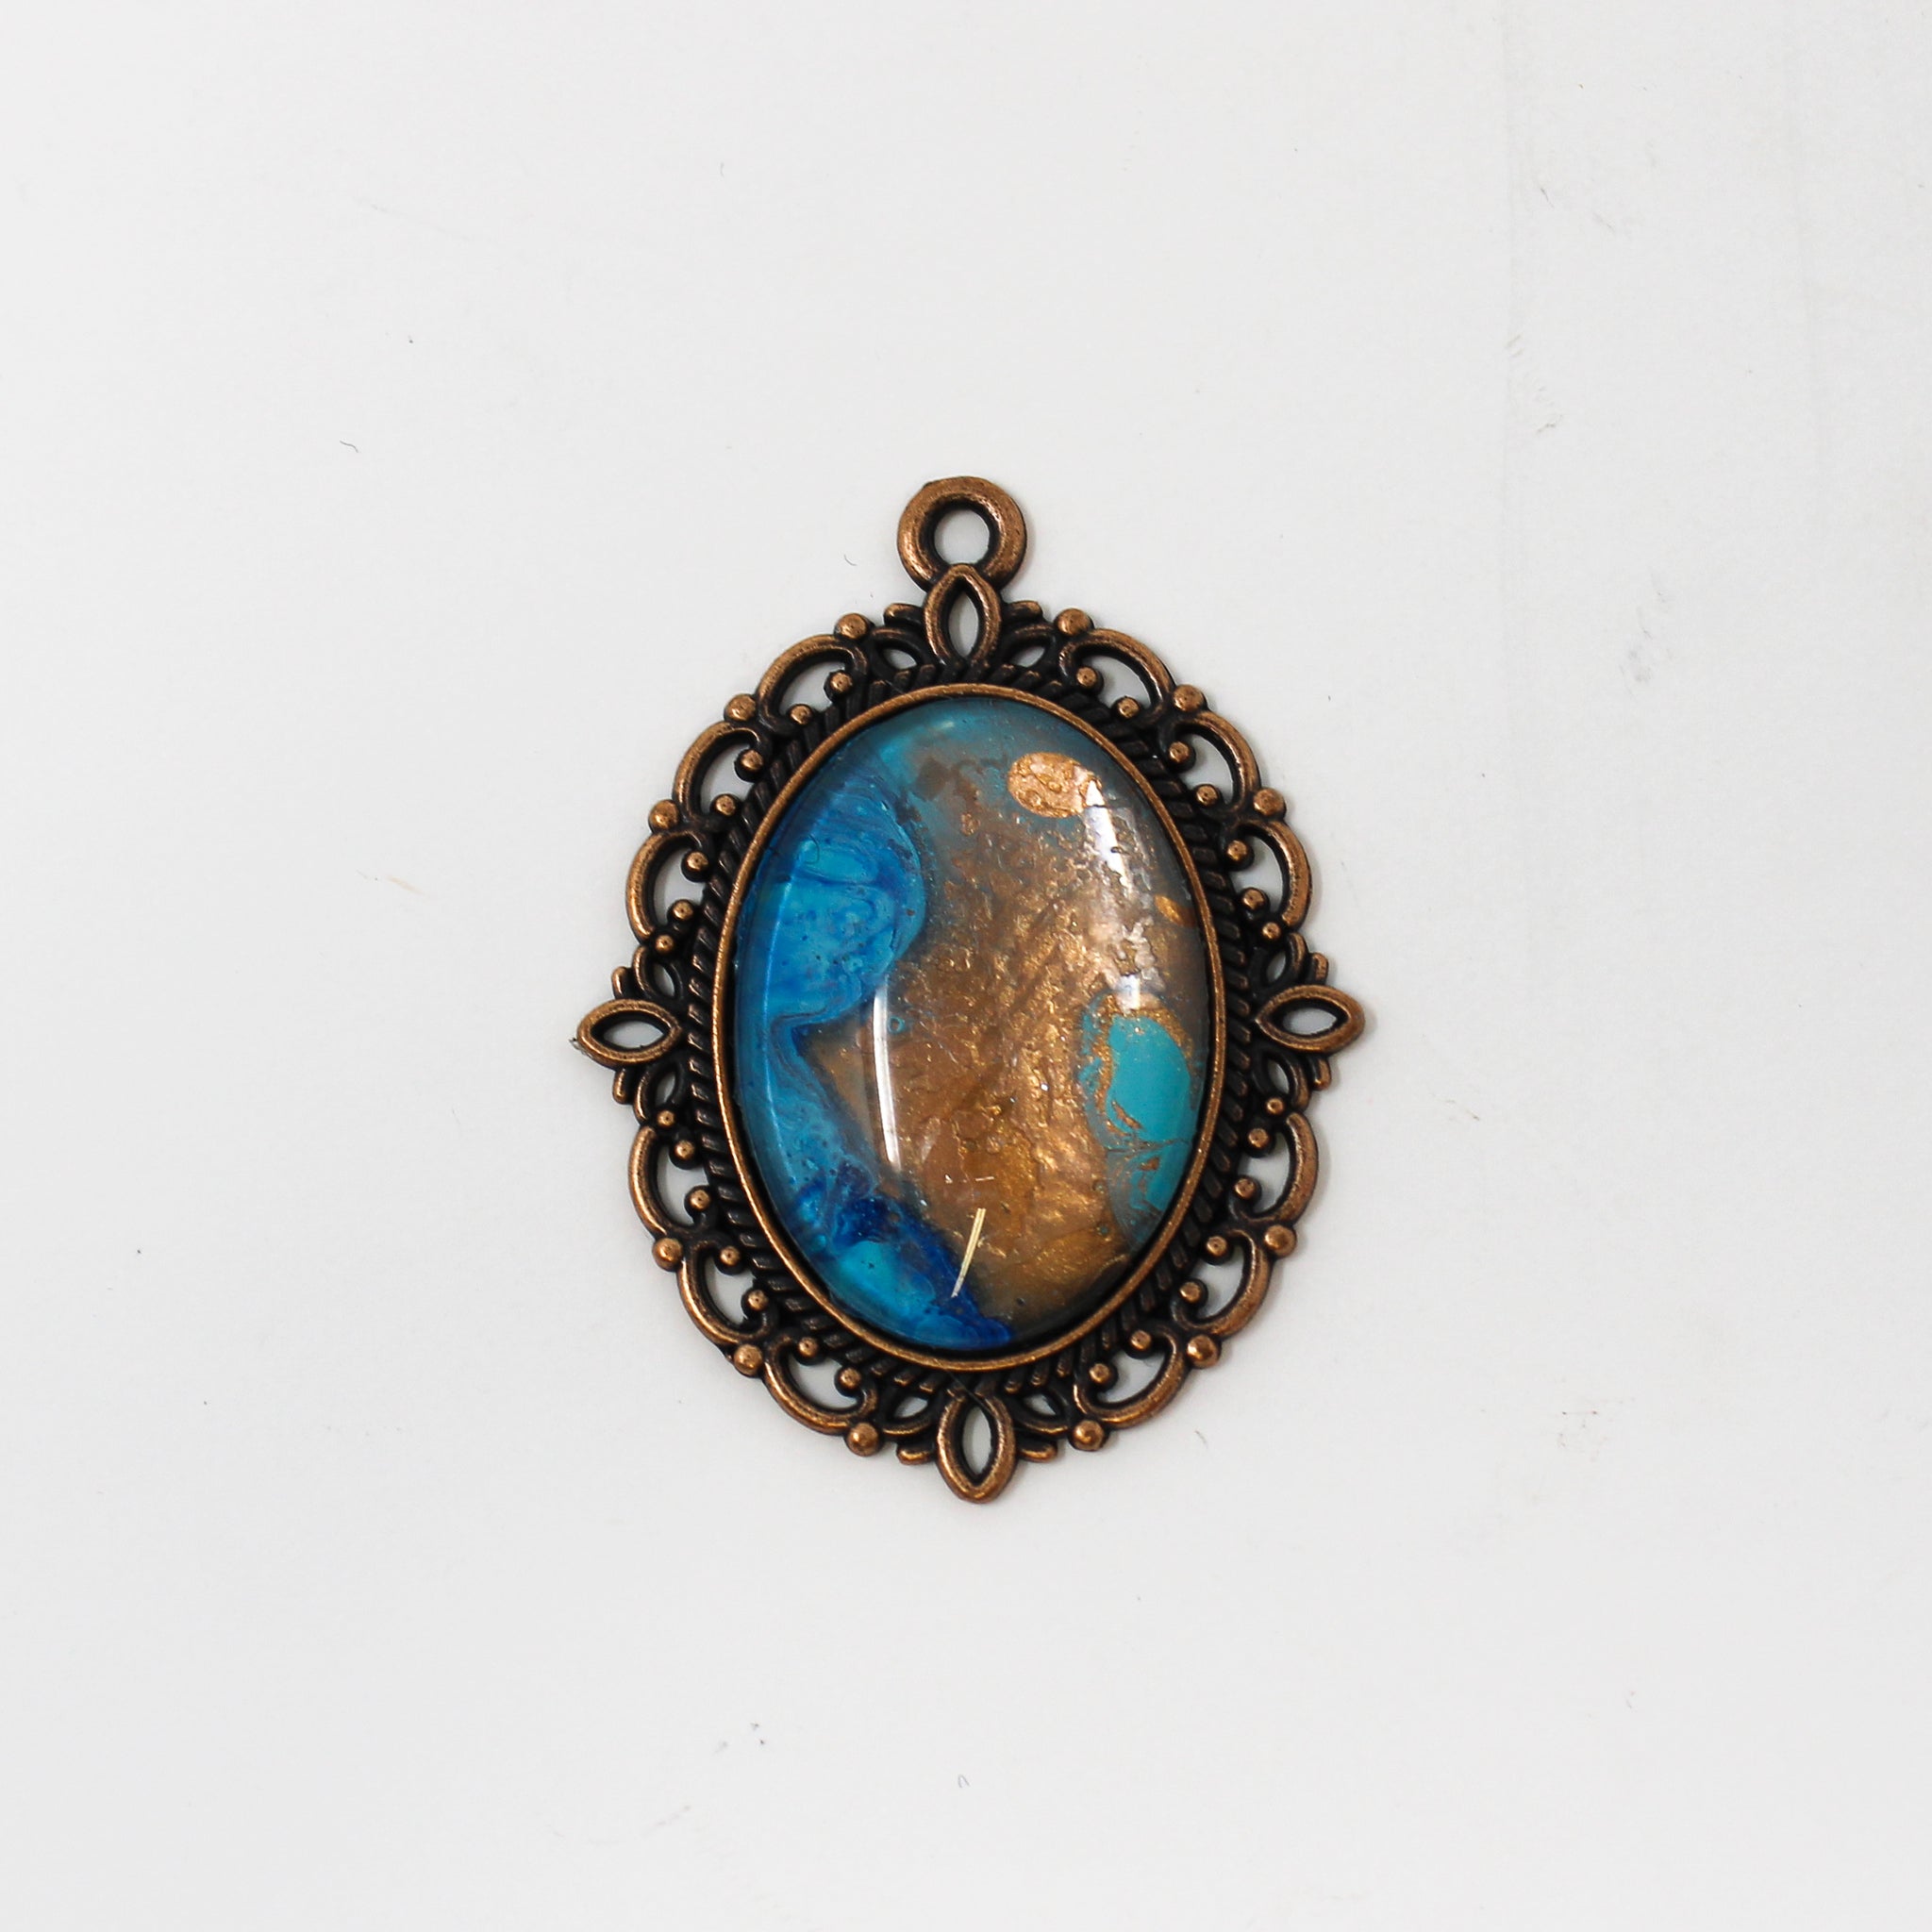 Victorian copper oval pendant